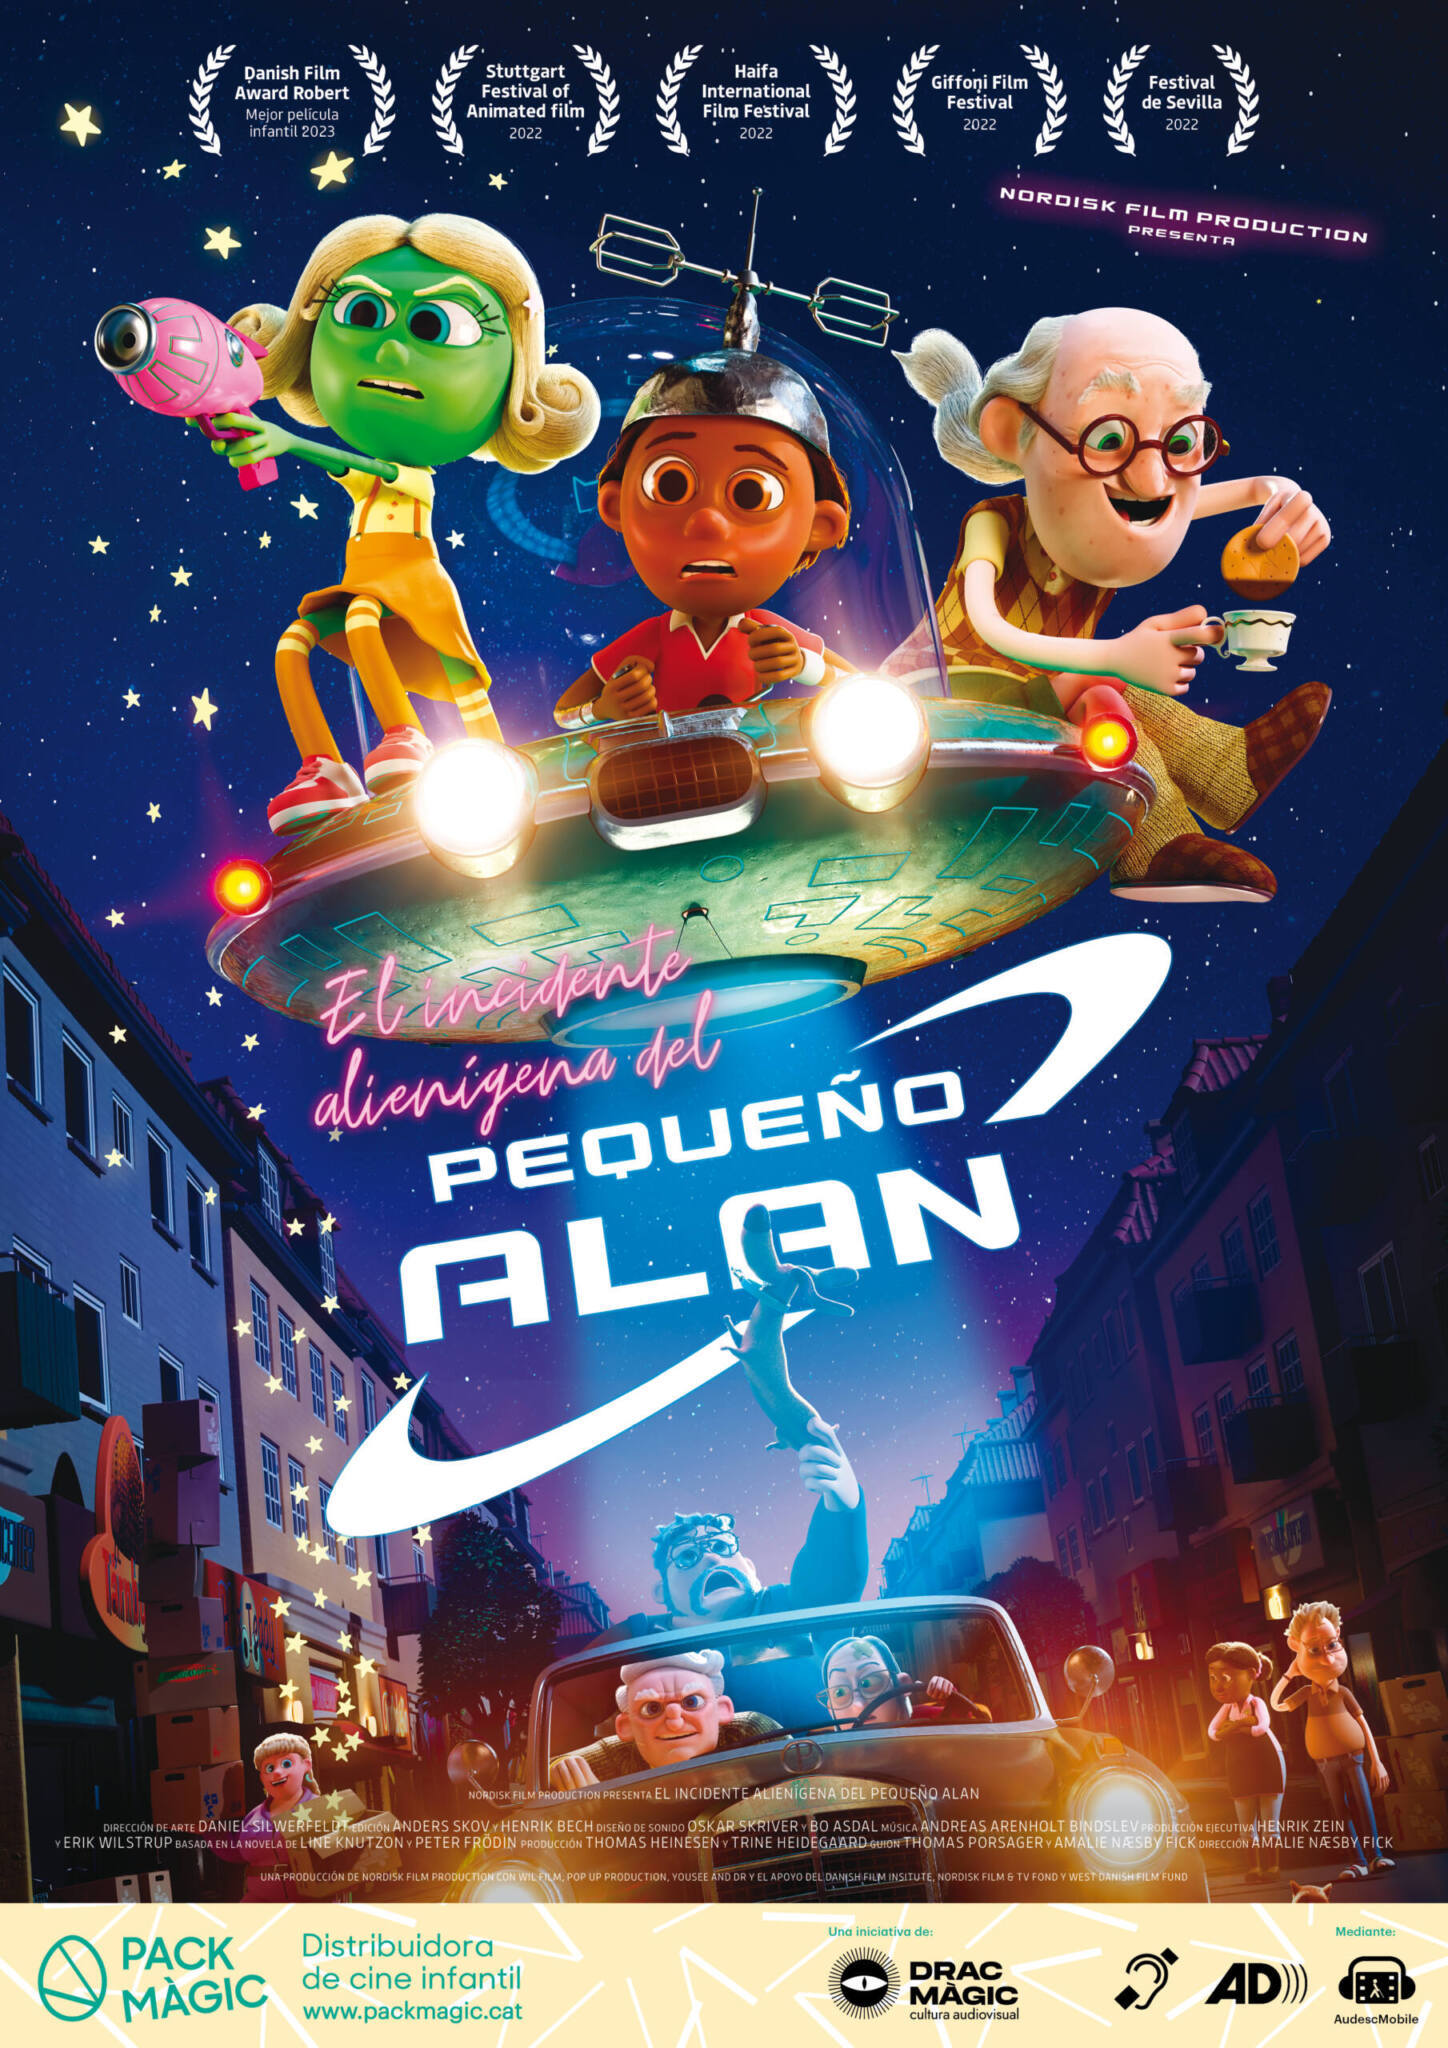 Cartel de El incidente alienígena del Pequeño Alan